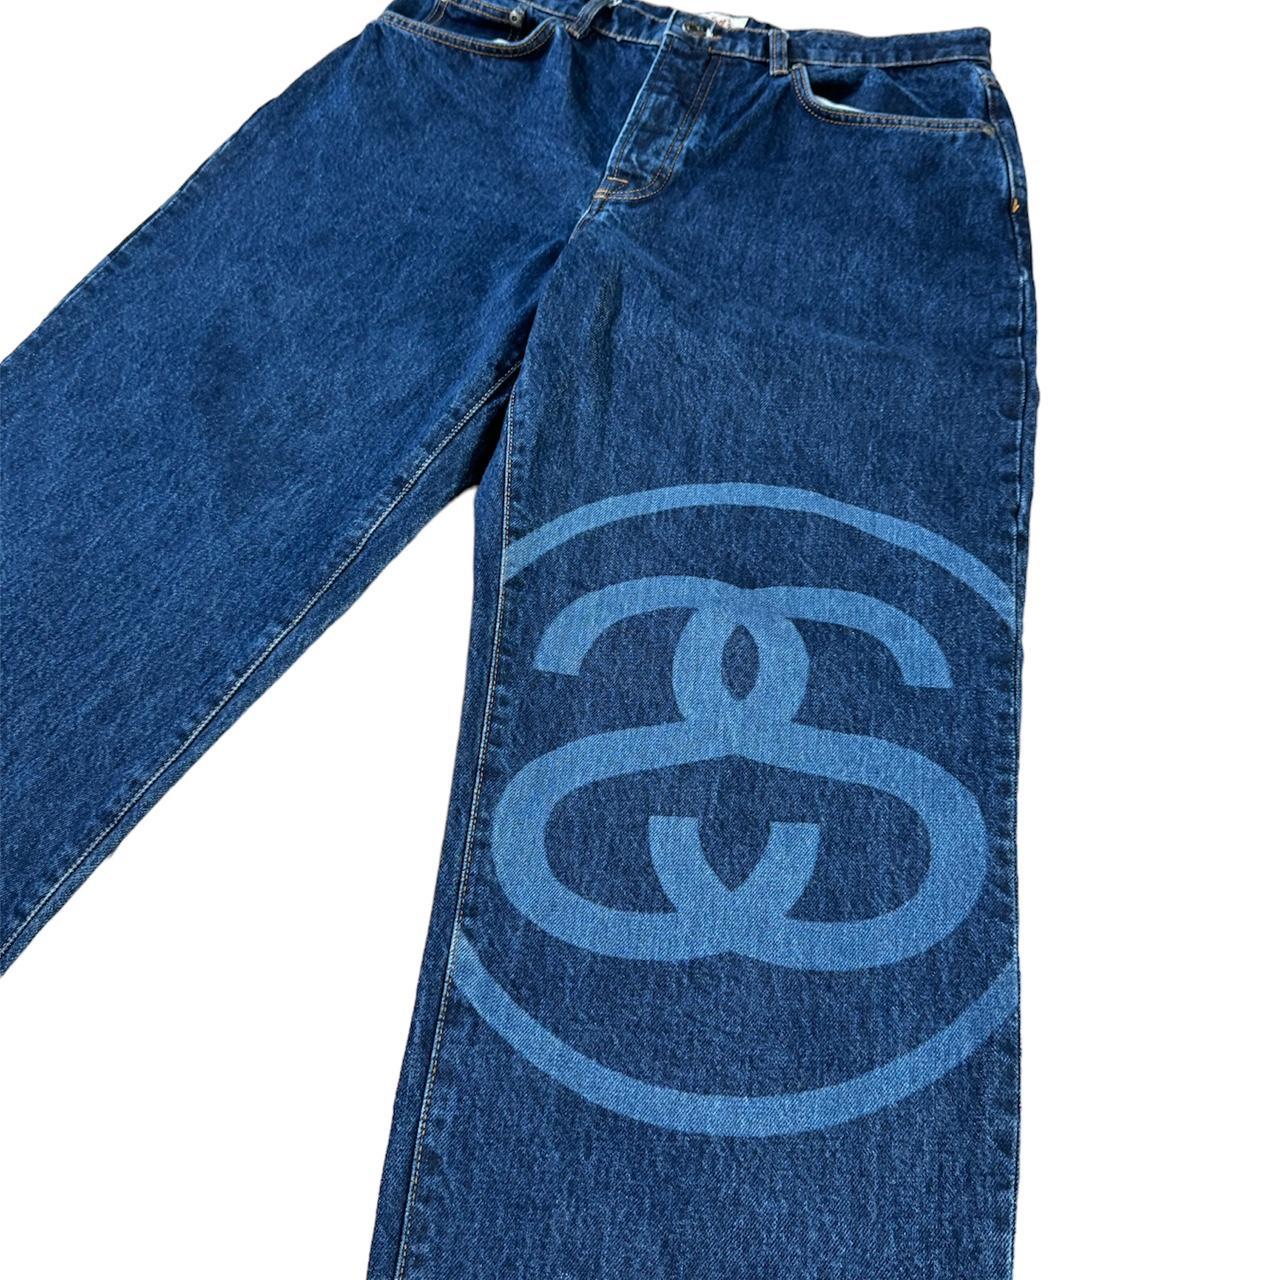 Stussy Big 'Ol Jeans - SS Link😍 - Size 32,... - Depop